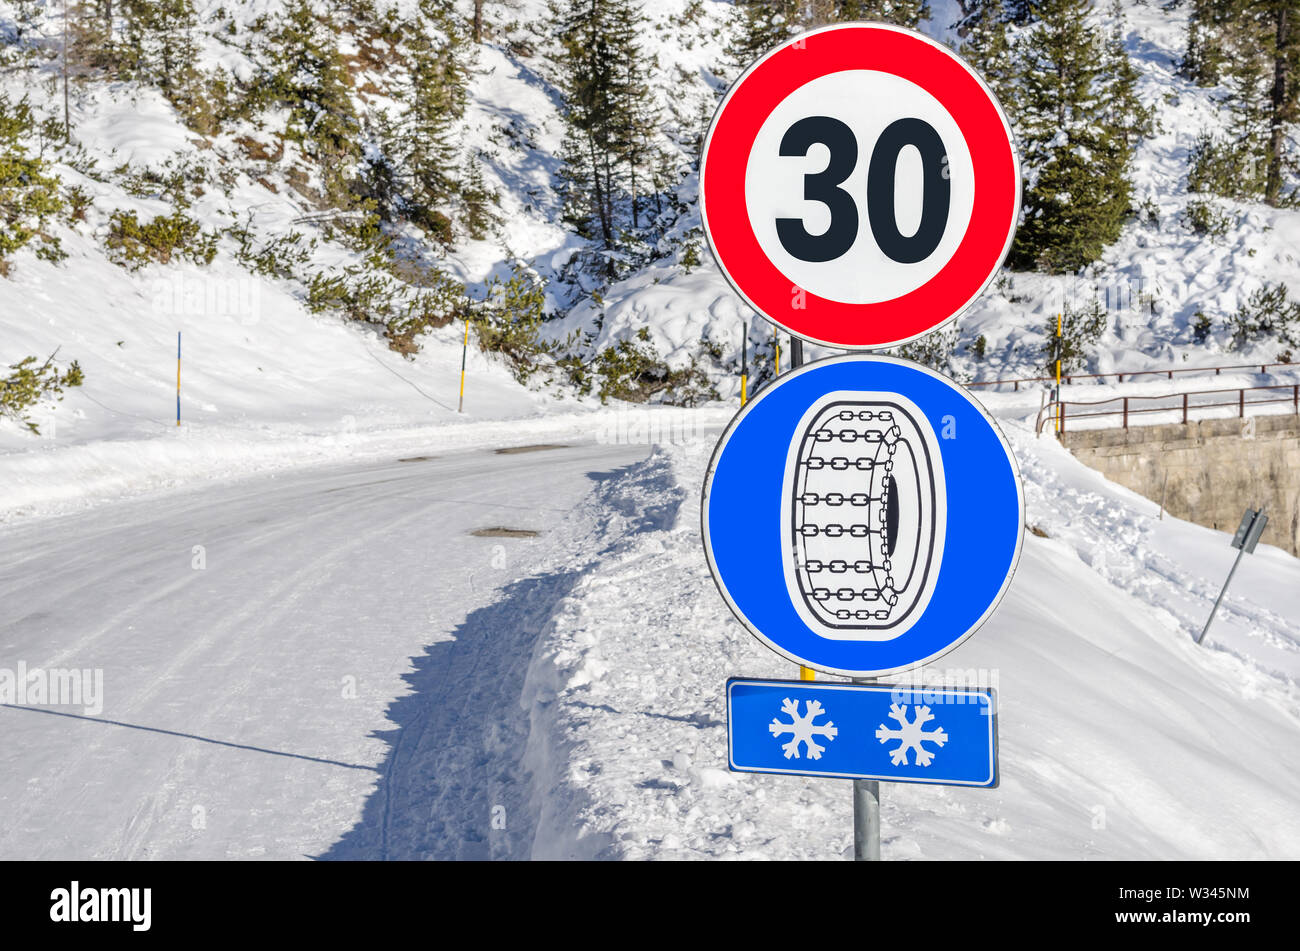 Schneeketten obligatorisch Straße Zeichen unten ein Tempolimit Zeichen entlang einer kurvigen Snowy Mountain Road Stockfoto